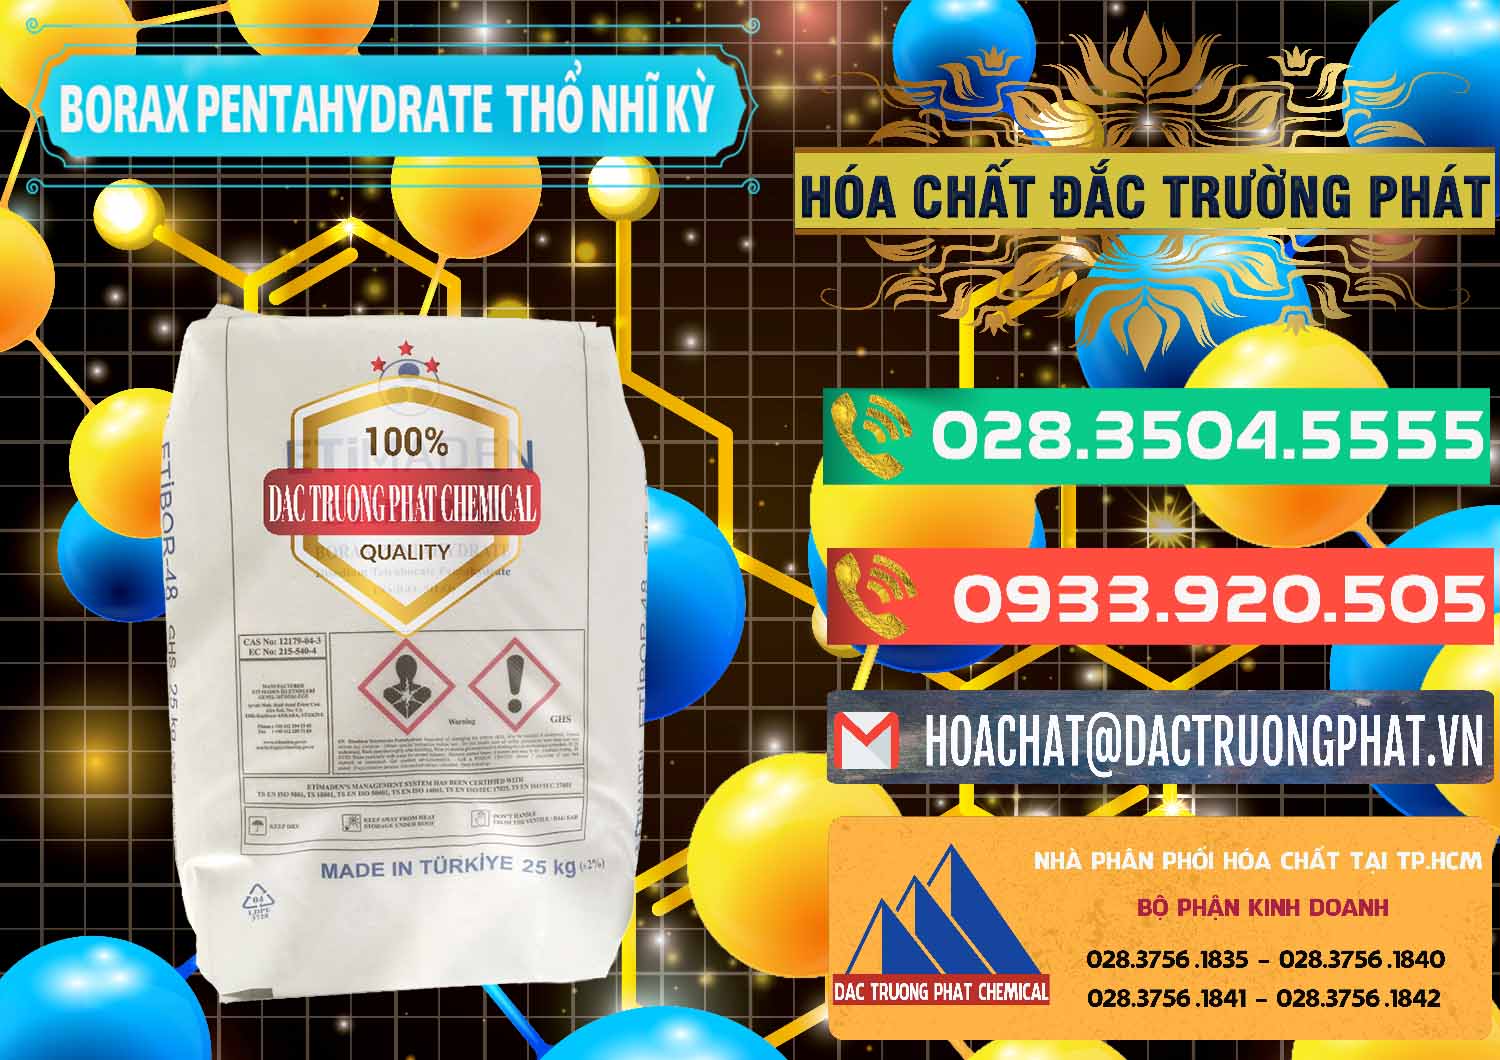 Cty chuyên bán - cung ứng Borax Pentahydrate Thổ Nhĩ Kỳ Turkey - 0431 - Đơn vị chuyên nhập khẩu và phân phối hóa chất tại TP.HCM - congtyhoachat.com.vn